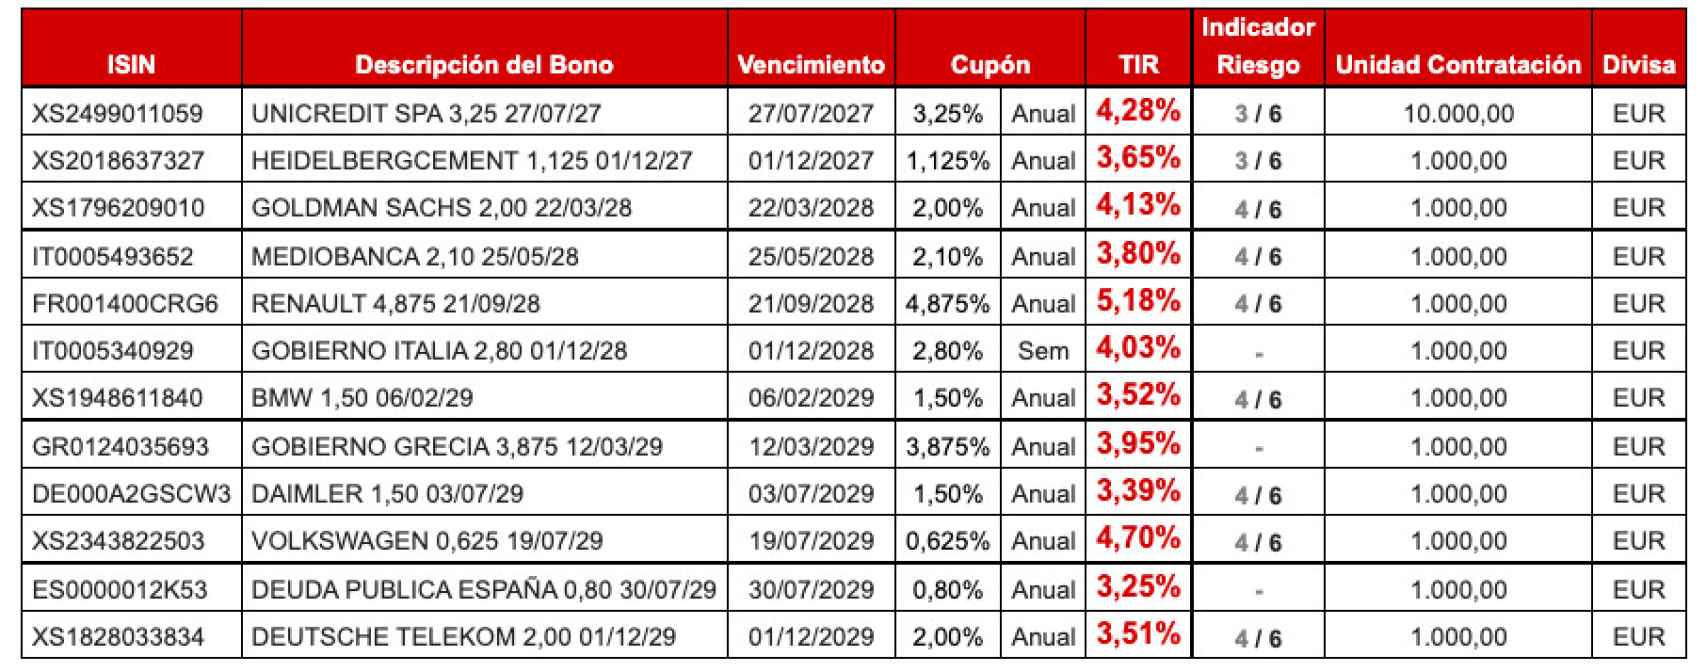 Una selección de los bonos que pueden encontrarse en la plataforma minorista de Auriga.